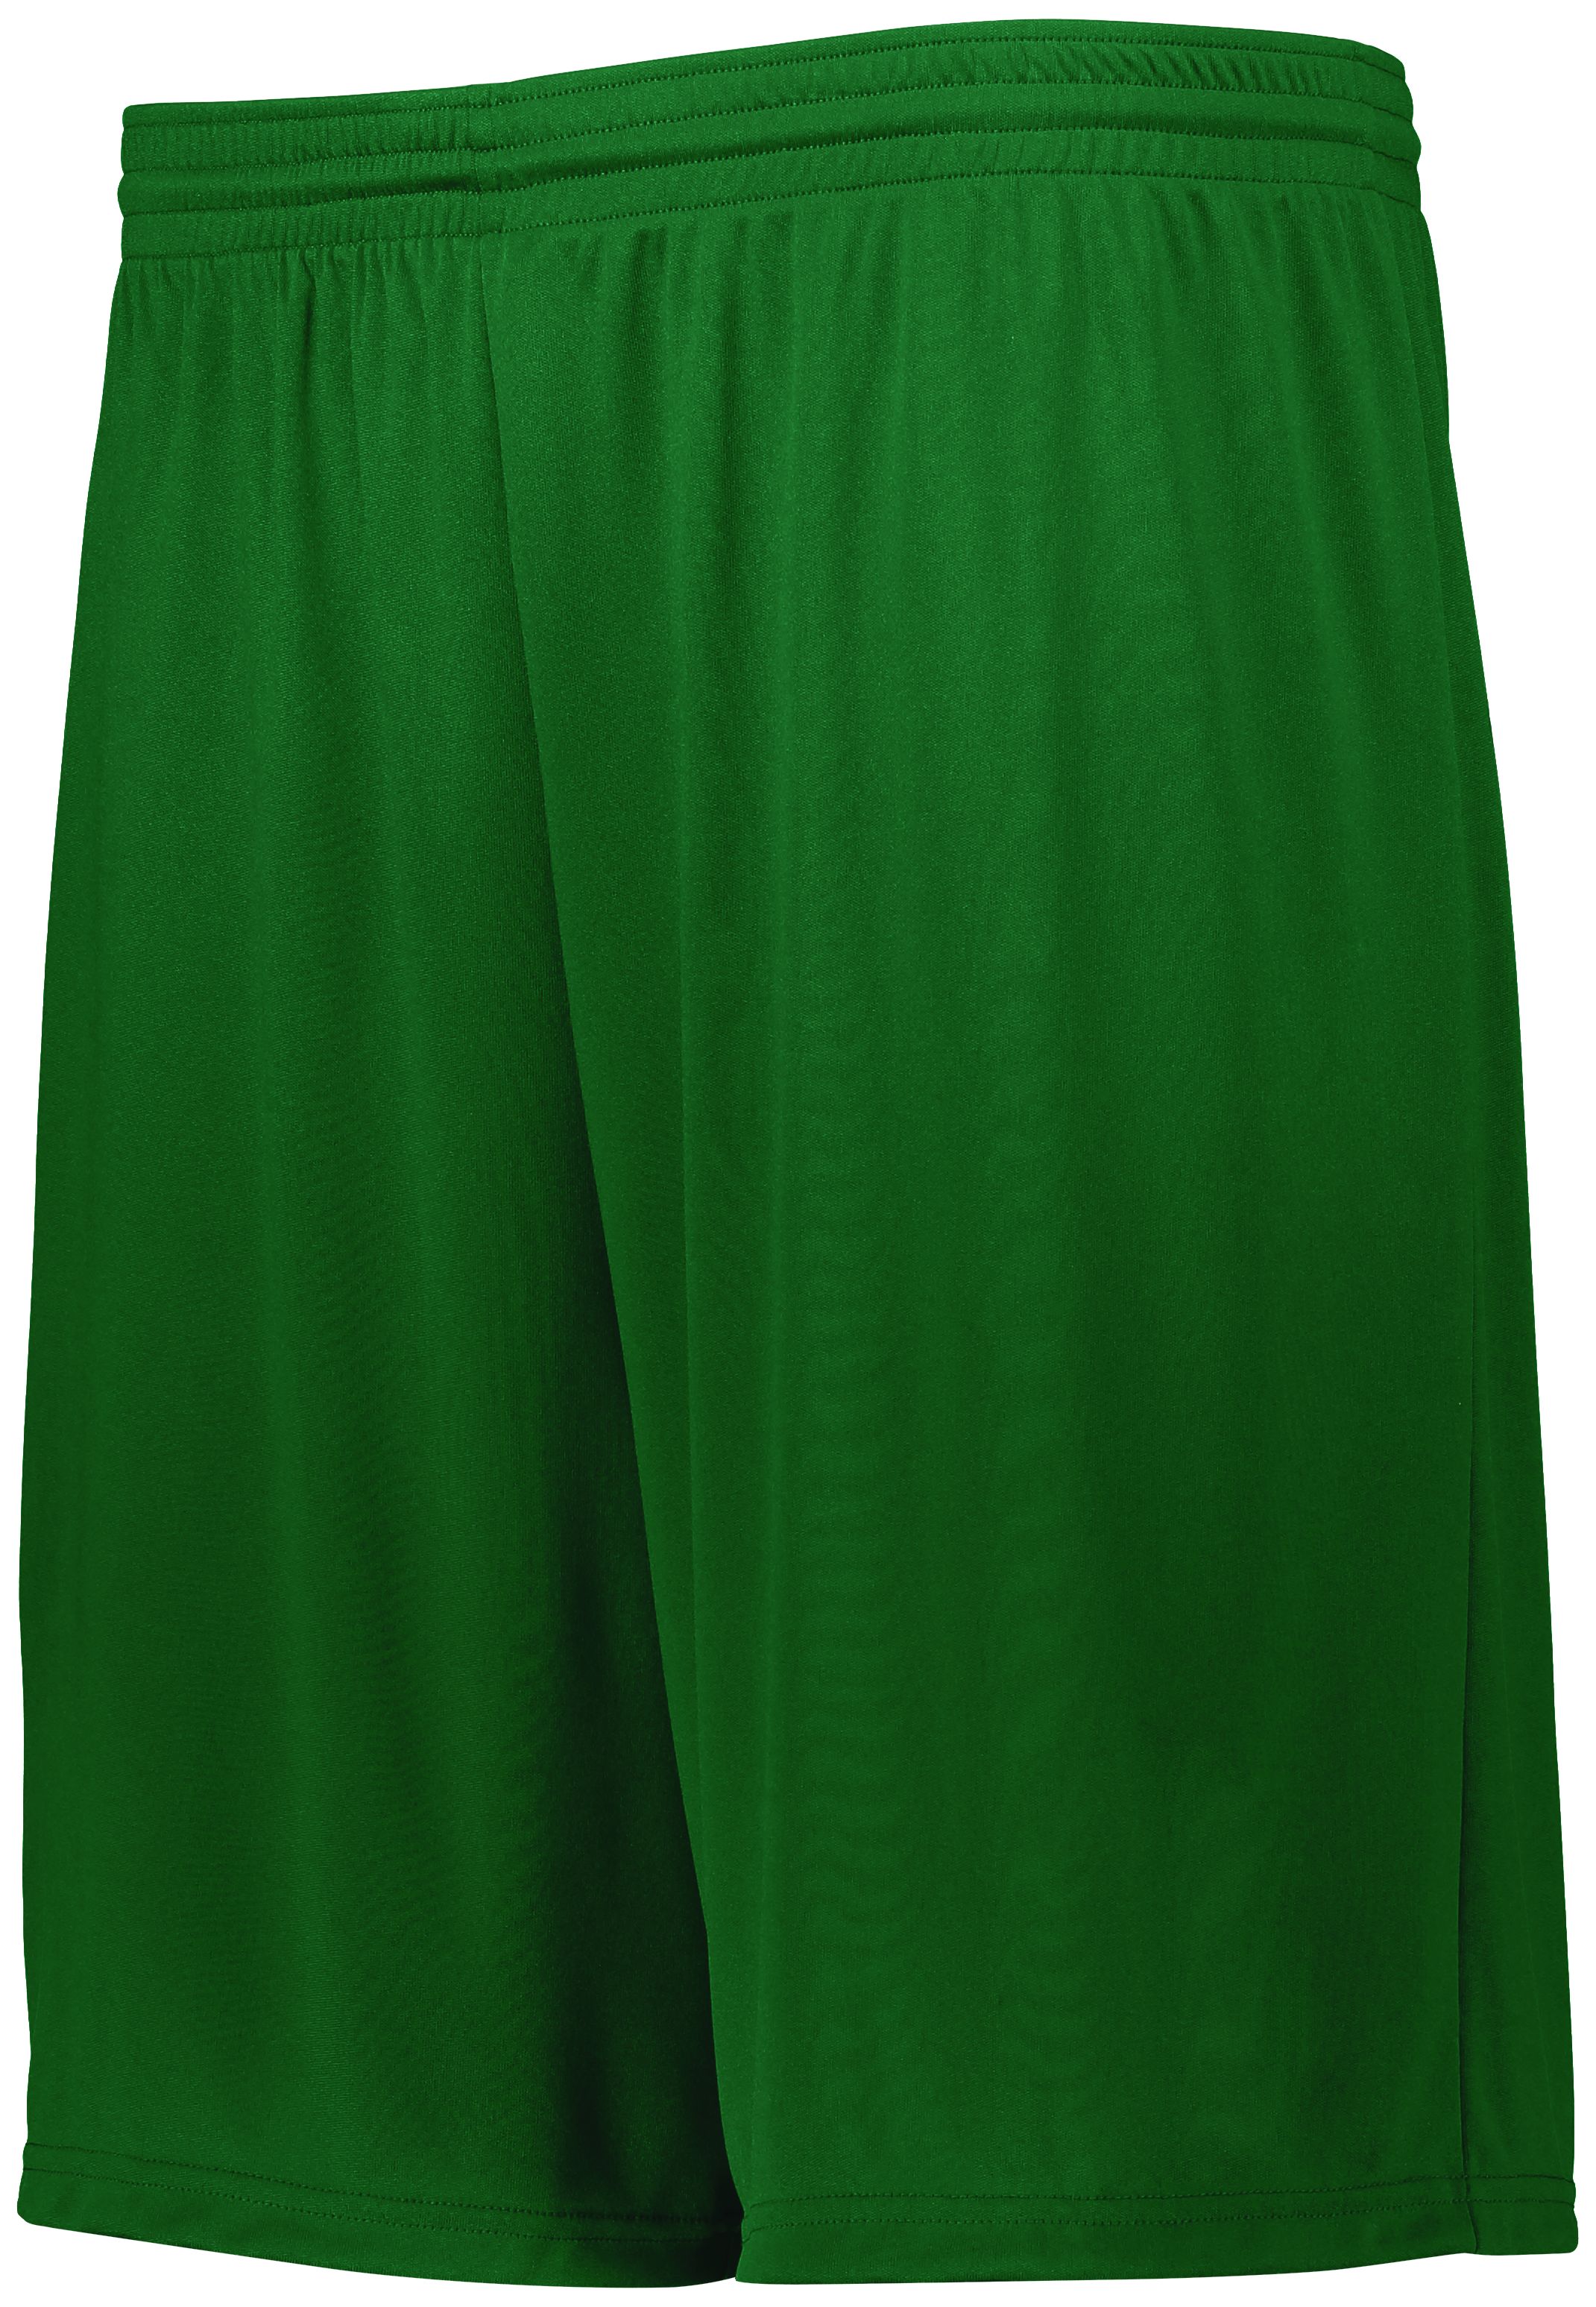 Augusta Sportswear 2780 - Attain Wicking Shorts